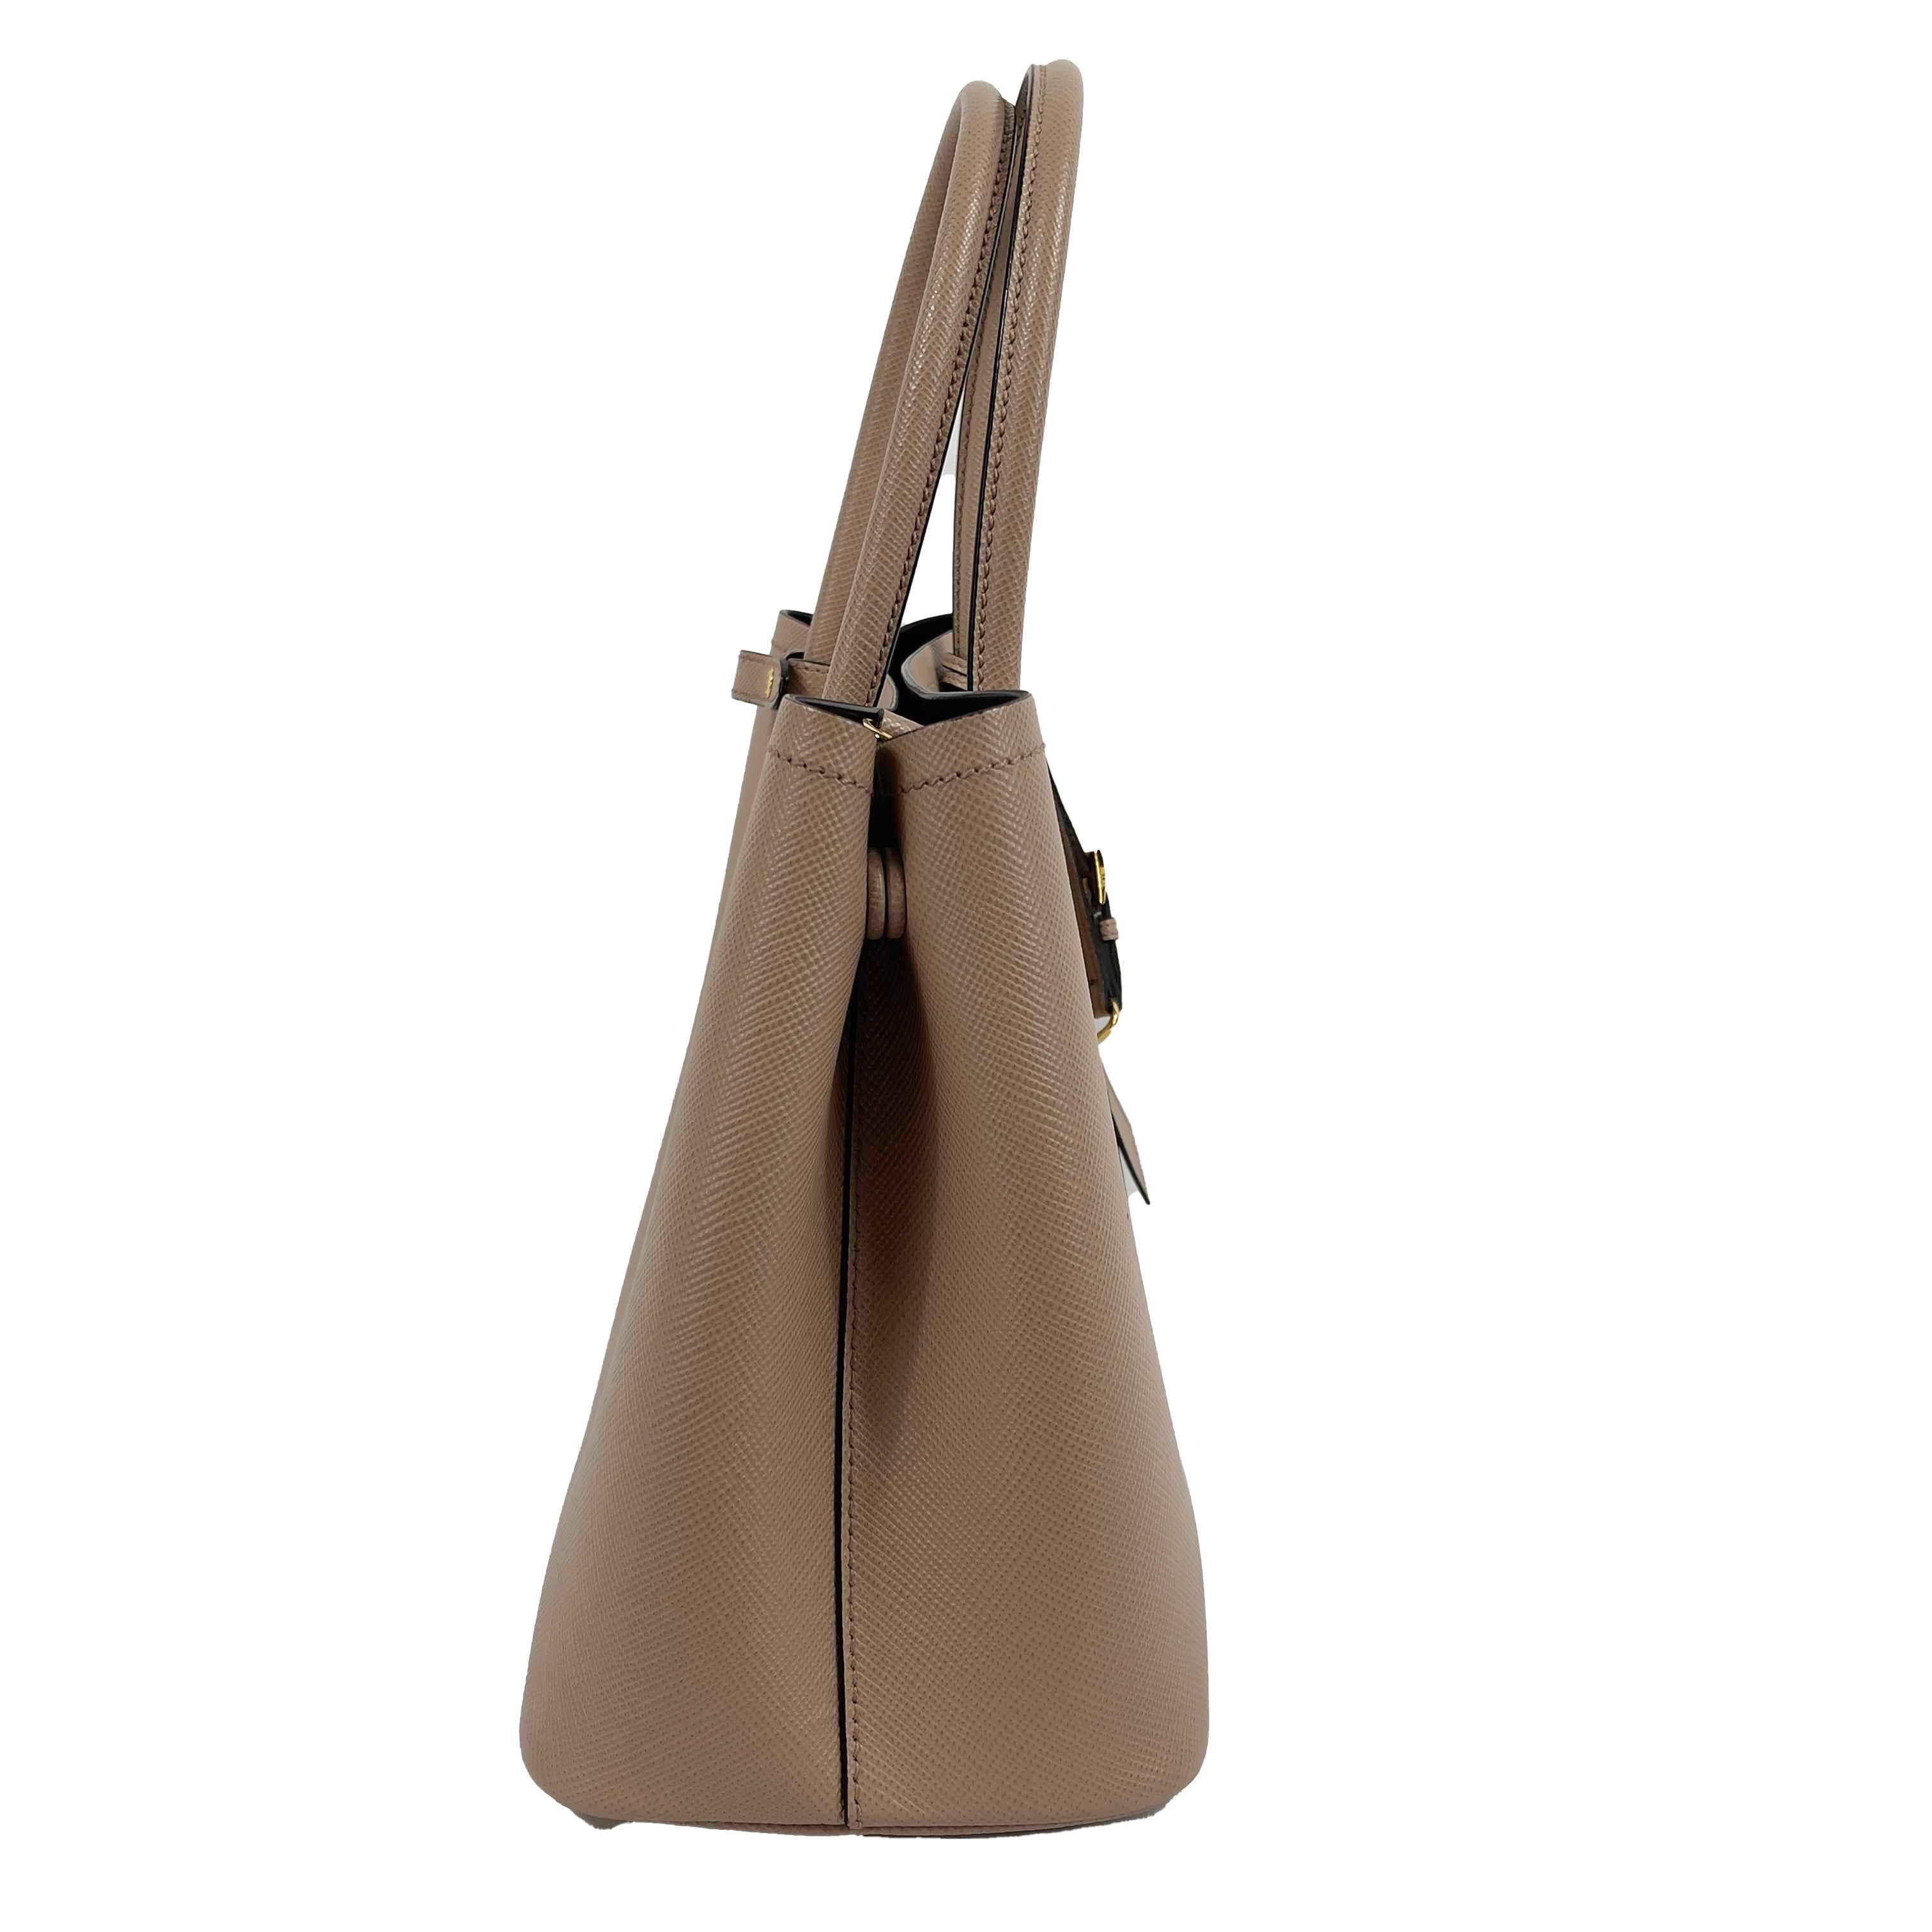 Prada - Small Saffiano Leather Double Bag Tote - Powder Pink / Black w/ Strap 5